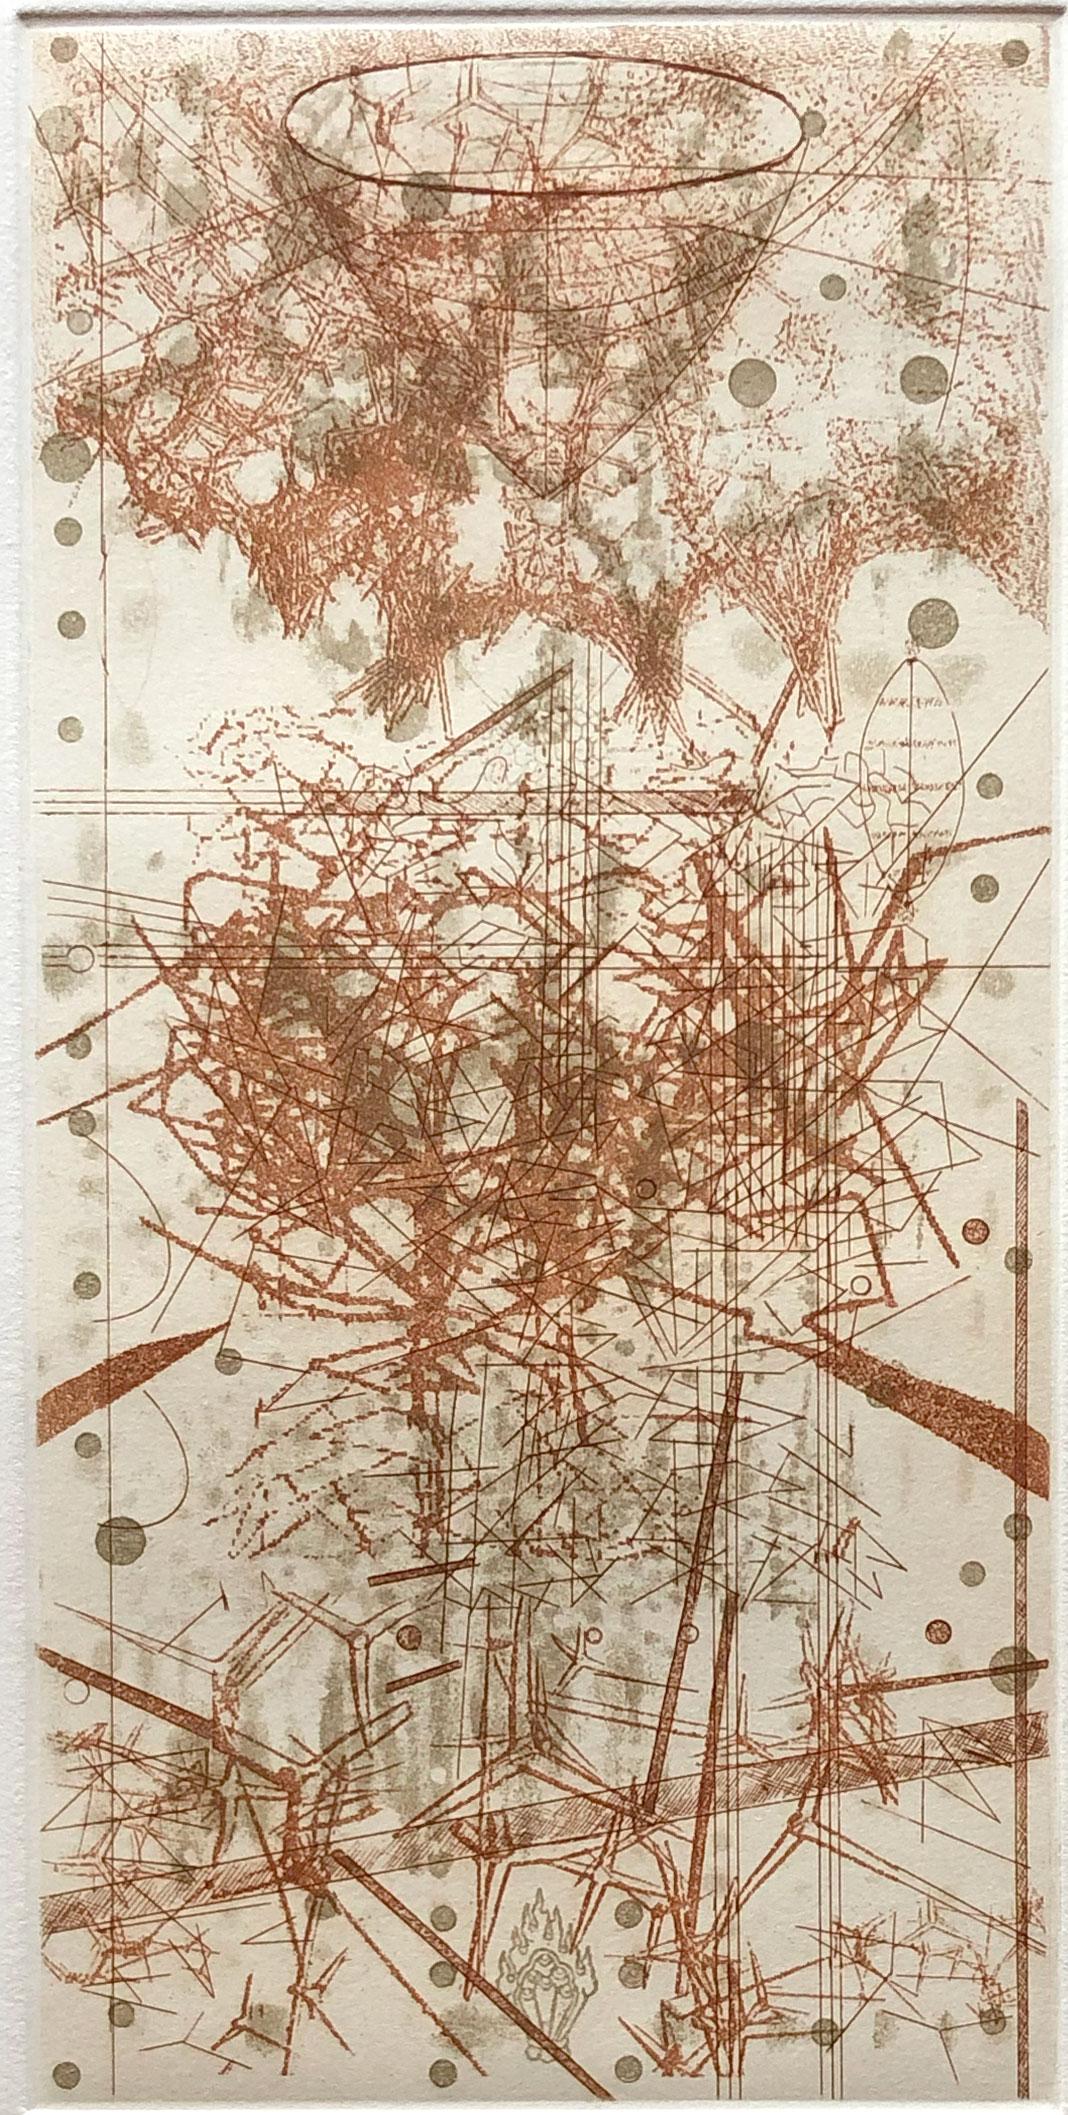 Abstract Print Rosalyn Richards - L'eau de pluie